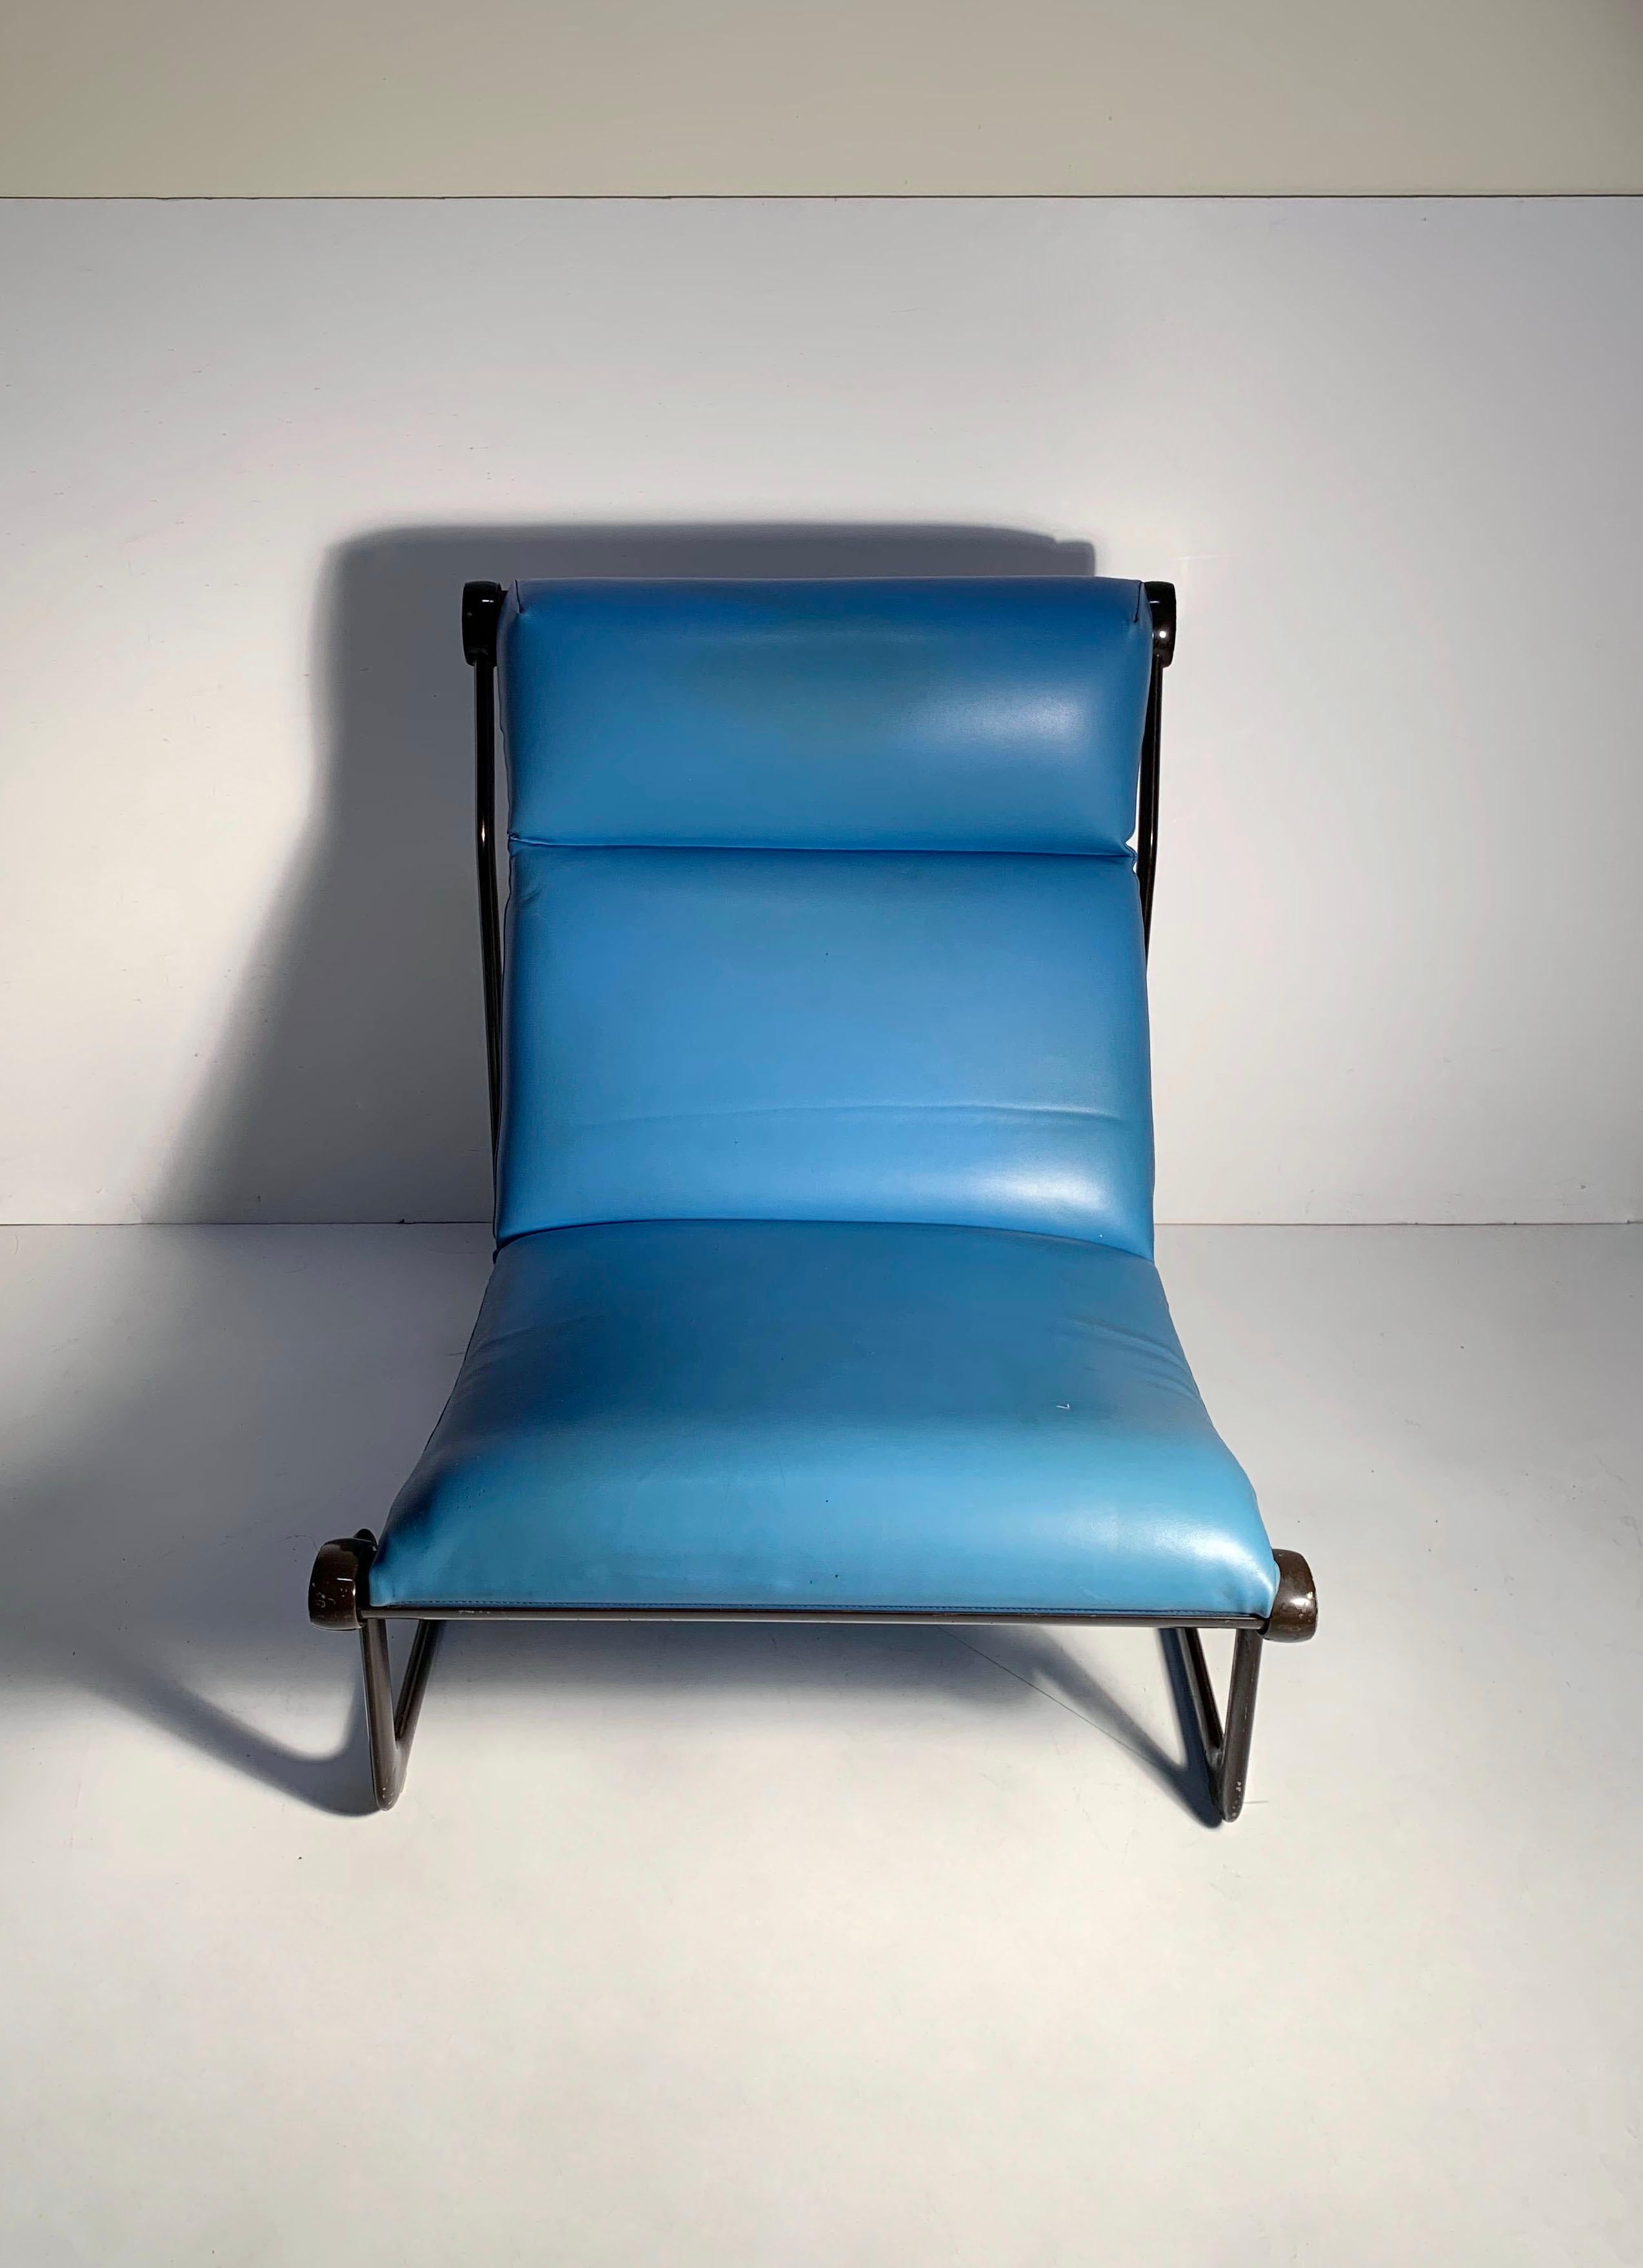 Chaise longue Vintage de Bruce Hannah et Andrew Morrison pour Knoll

Une variante assez rare de la chaise dans un modèle à haut dossier. 

La finition du cadre et le rembourrage sont d'origine et présentent une certaine usure. Désirera très